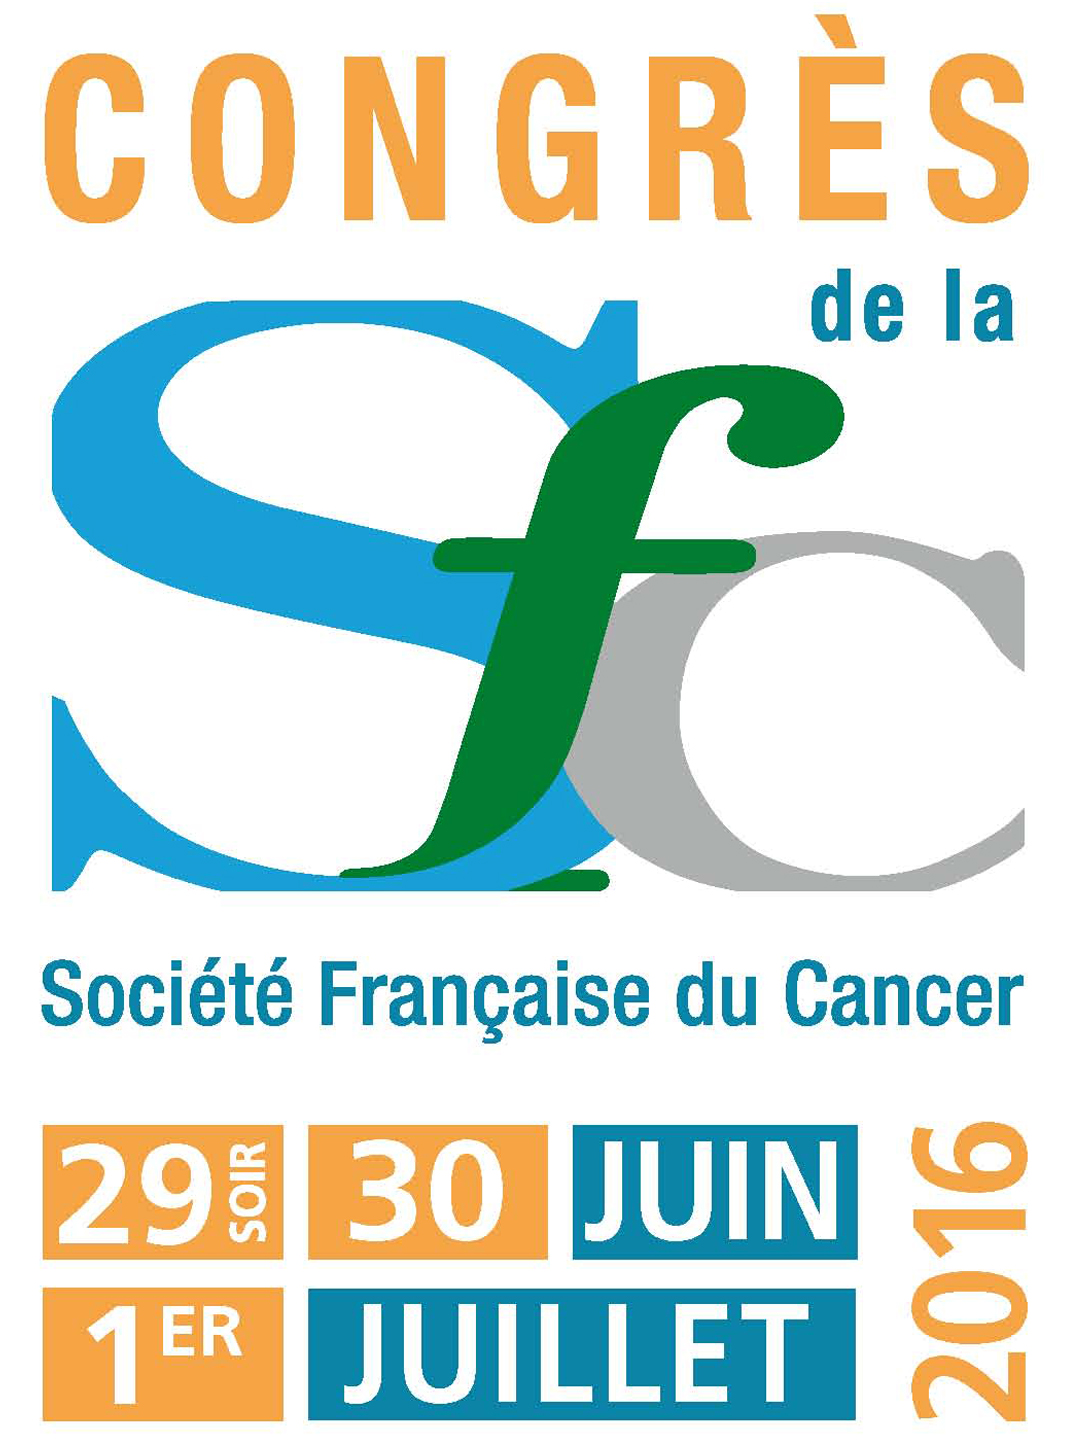 Congrès de la Société Française du Cancer